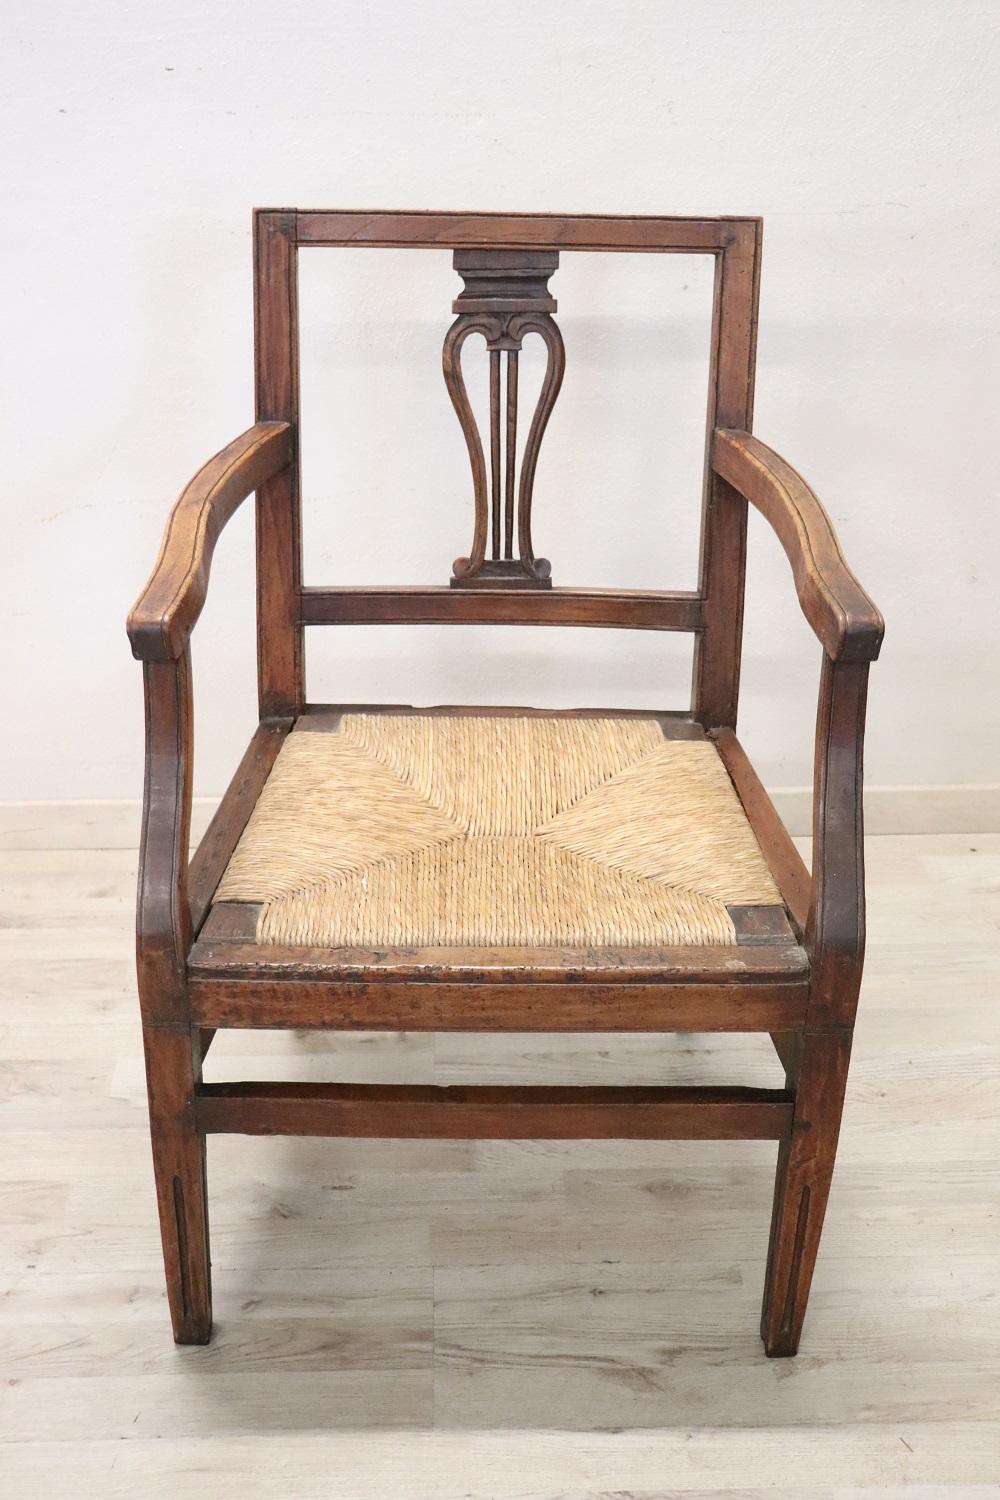 Schöne 18. Jahrhundert der Zeit Louis XVI italienische antike rustikale Sessel in massivem Nussbaumholz. Der Sessel ist sehr einfach und wesentlich. Wunderschöne Dekoration aus Holz. Die Sitzfläche ist breit und bequem aus rustikalem Stroh. Der